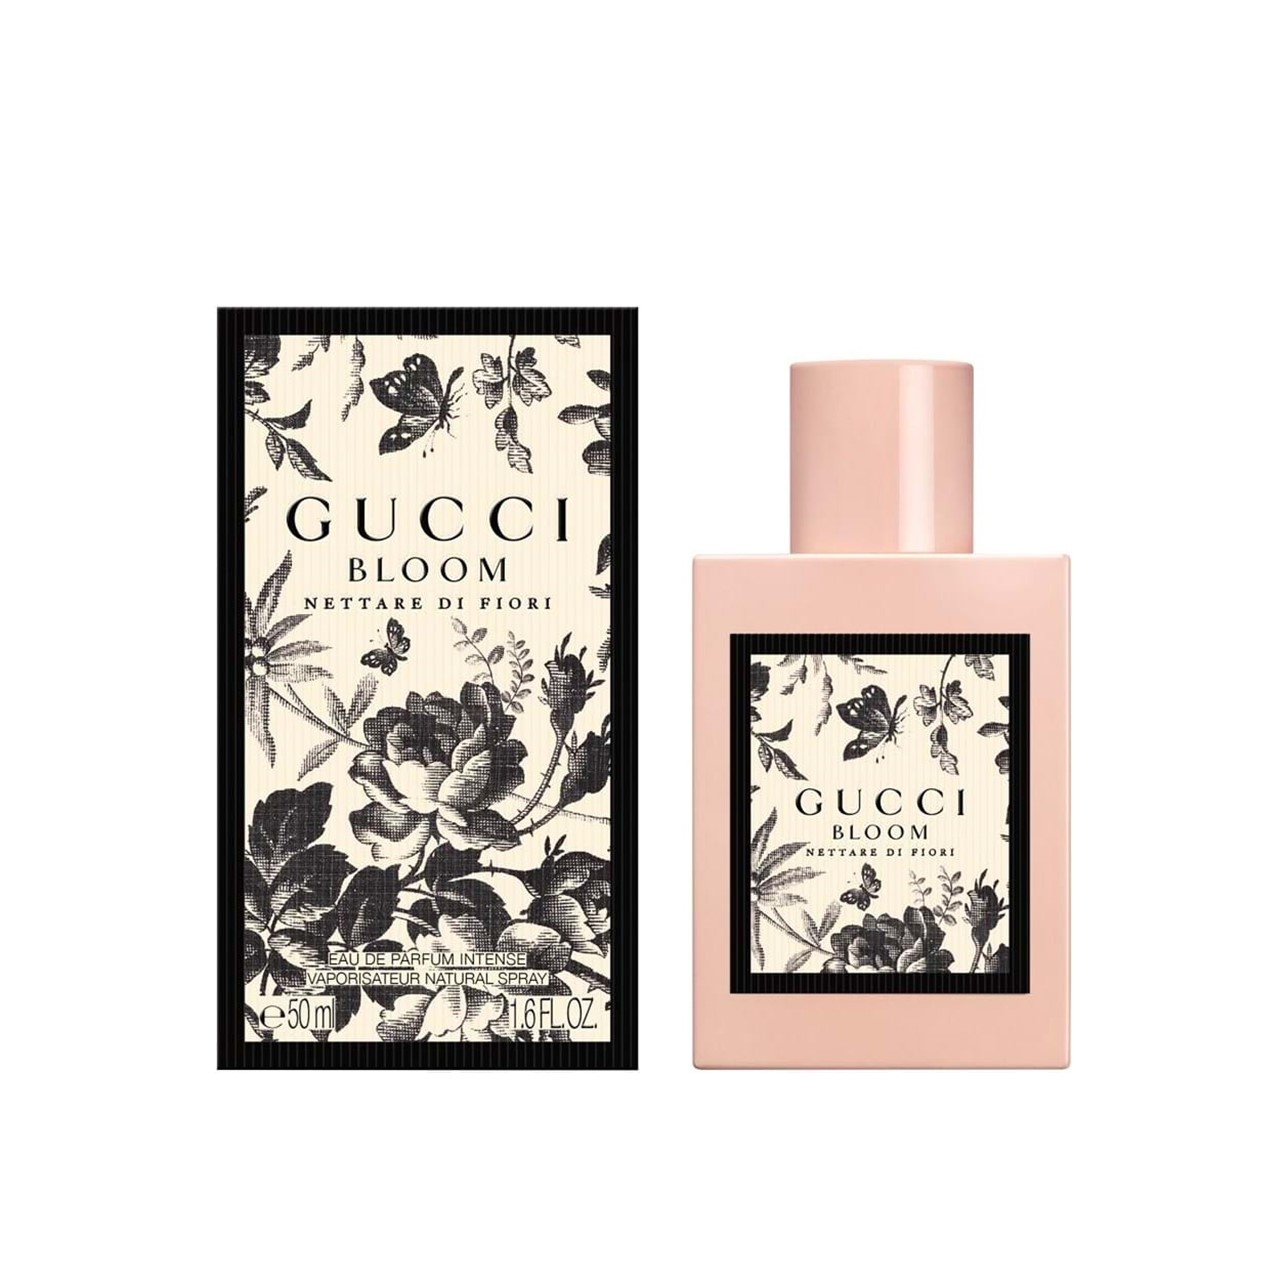 Gucci Bloom Nettare Di Fiori Eau de Parfum Intense 50ml (1.7fl oz)